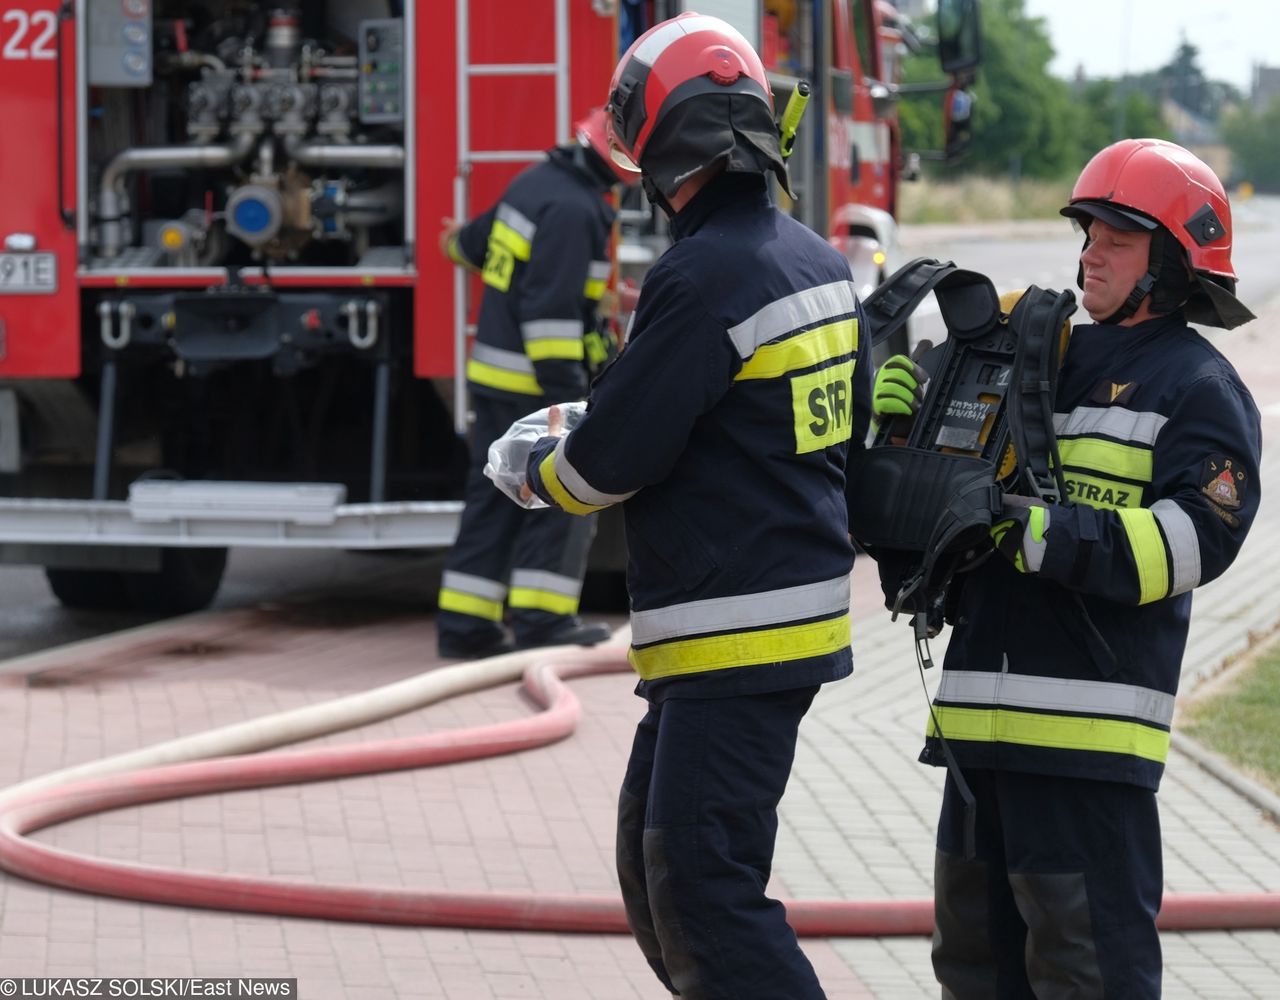 Nastolatkowie chcieli spalić zeszyt. Spłonęła murawa orlika w Mińsku Mazowieckim